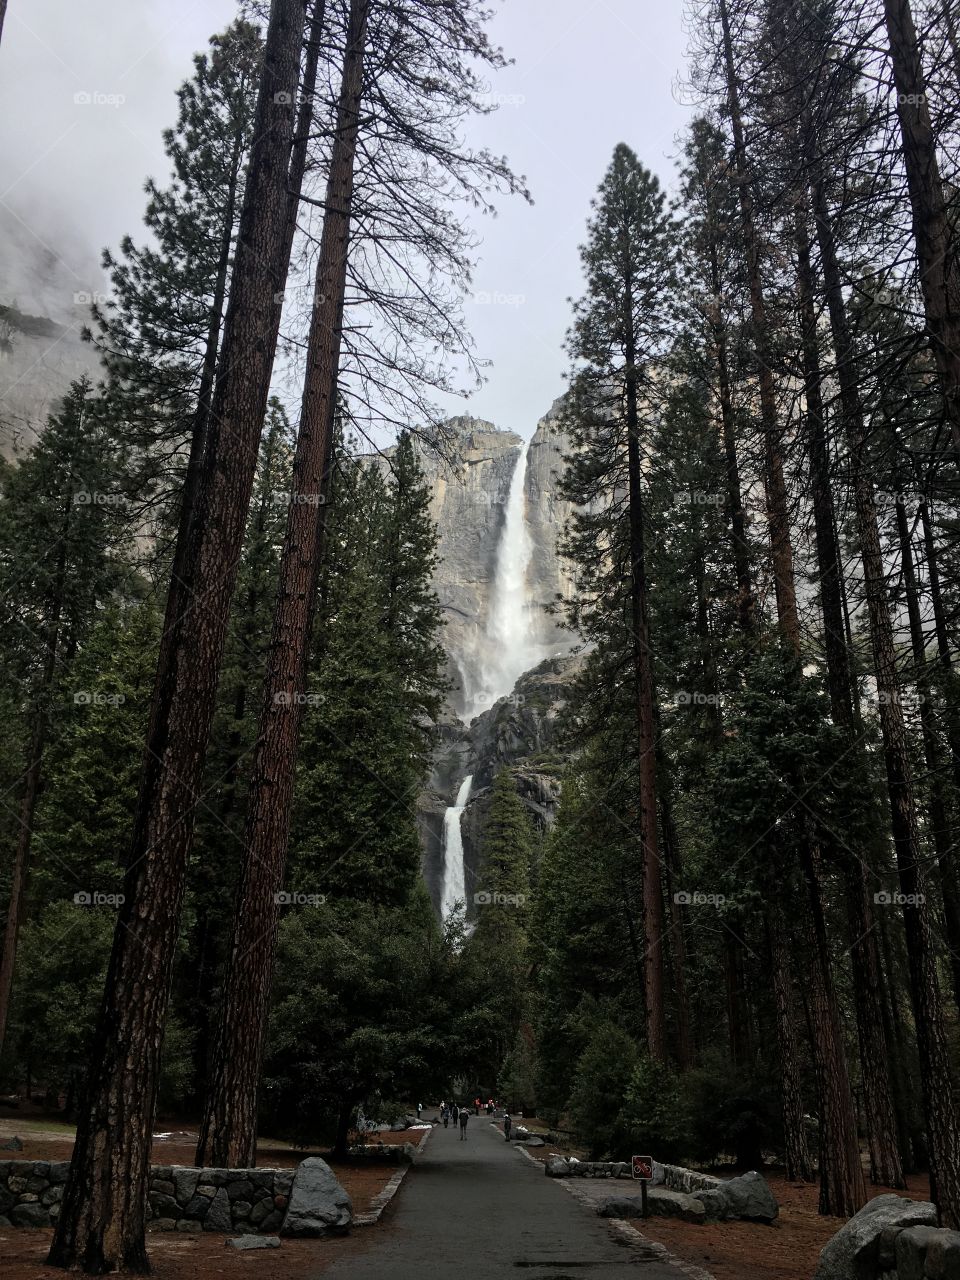 Beautiful waterfall in Yosemite, California!